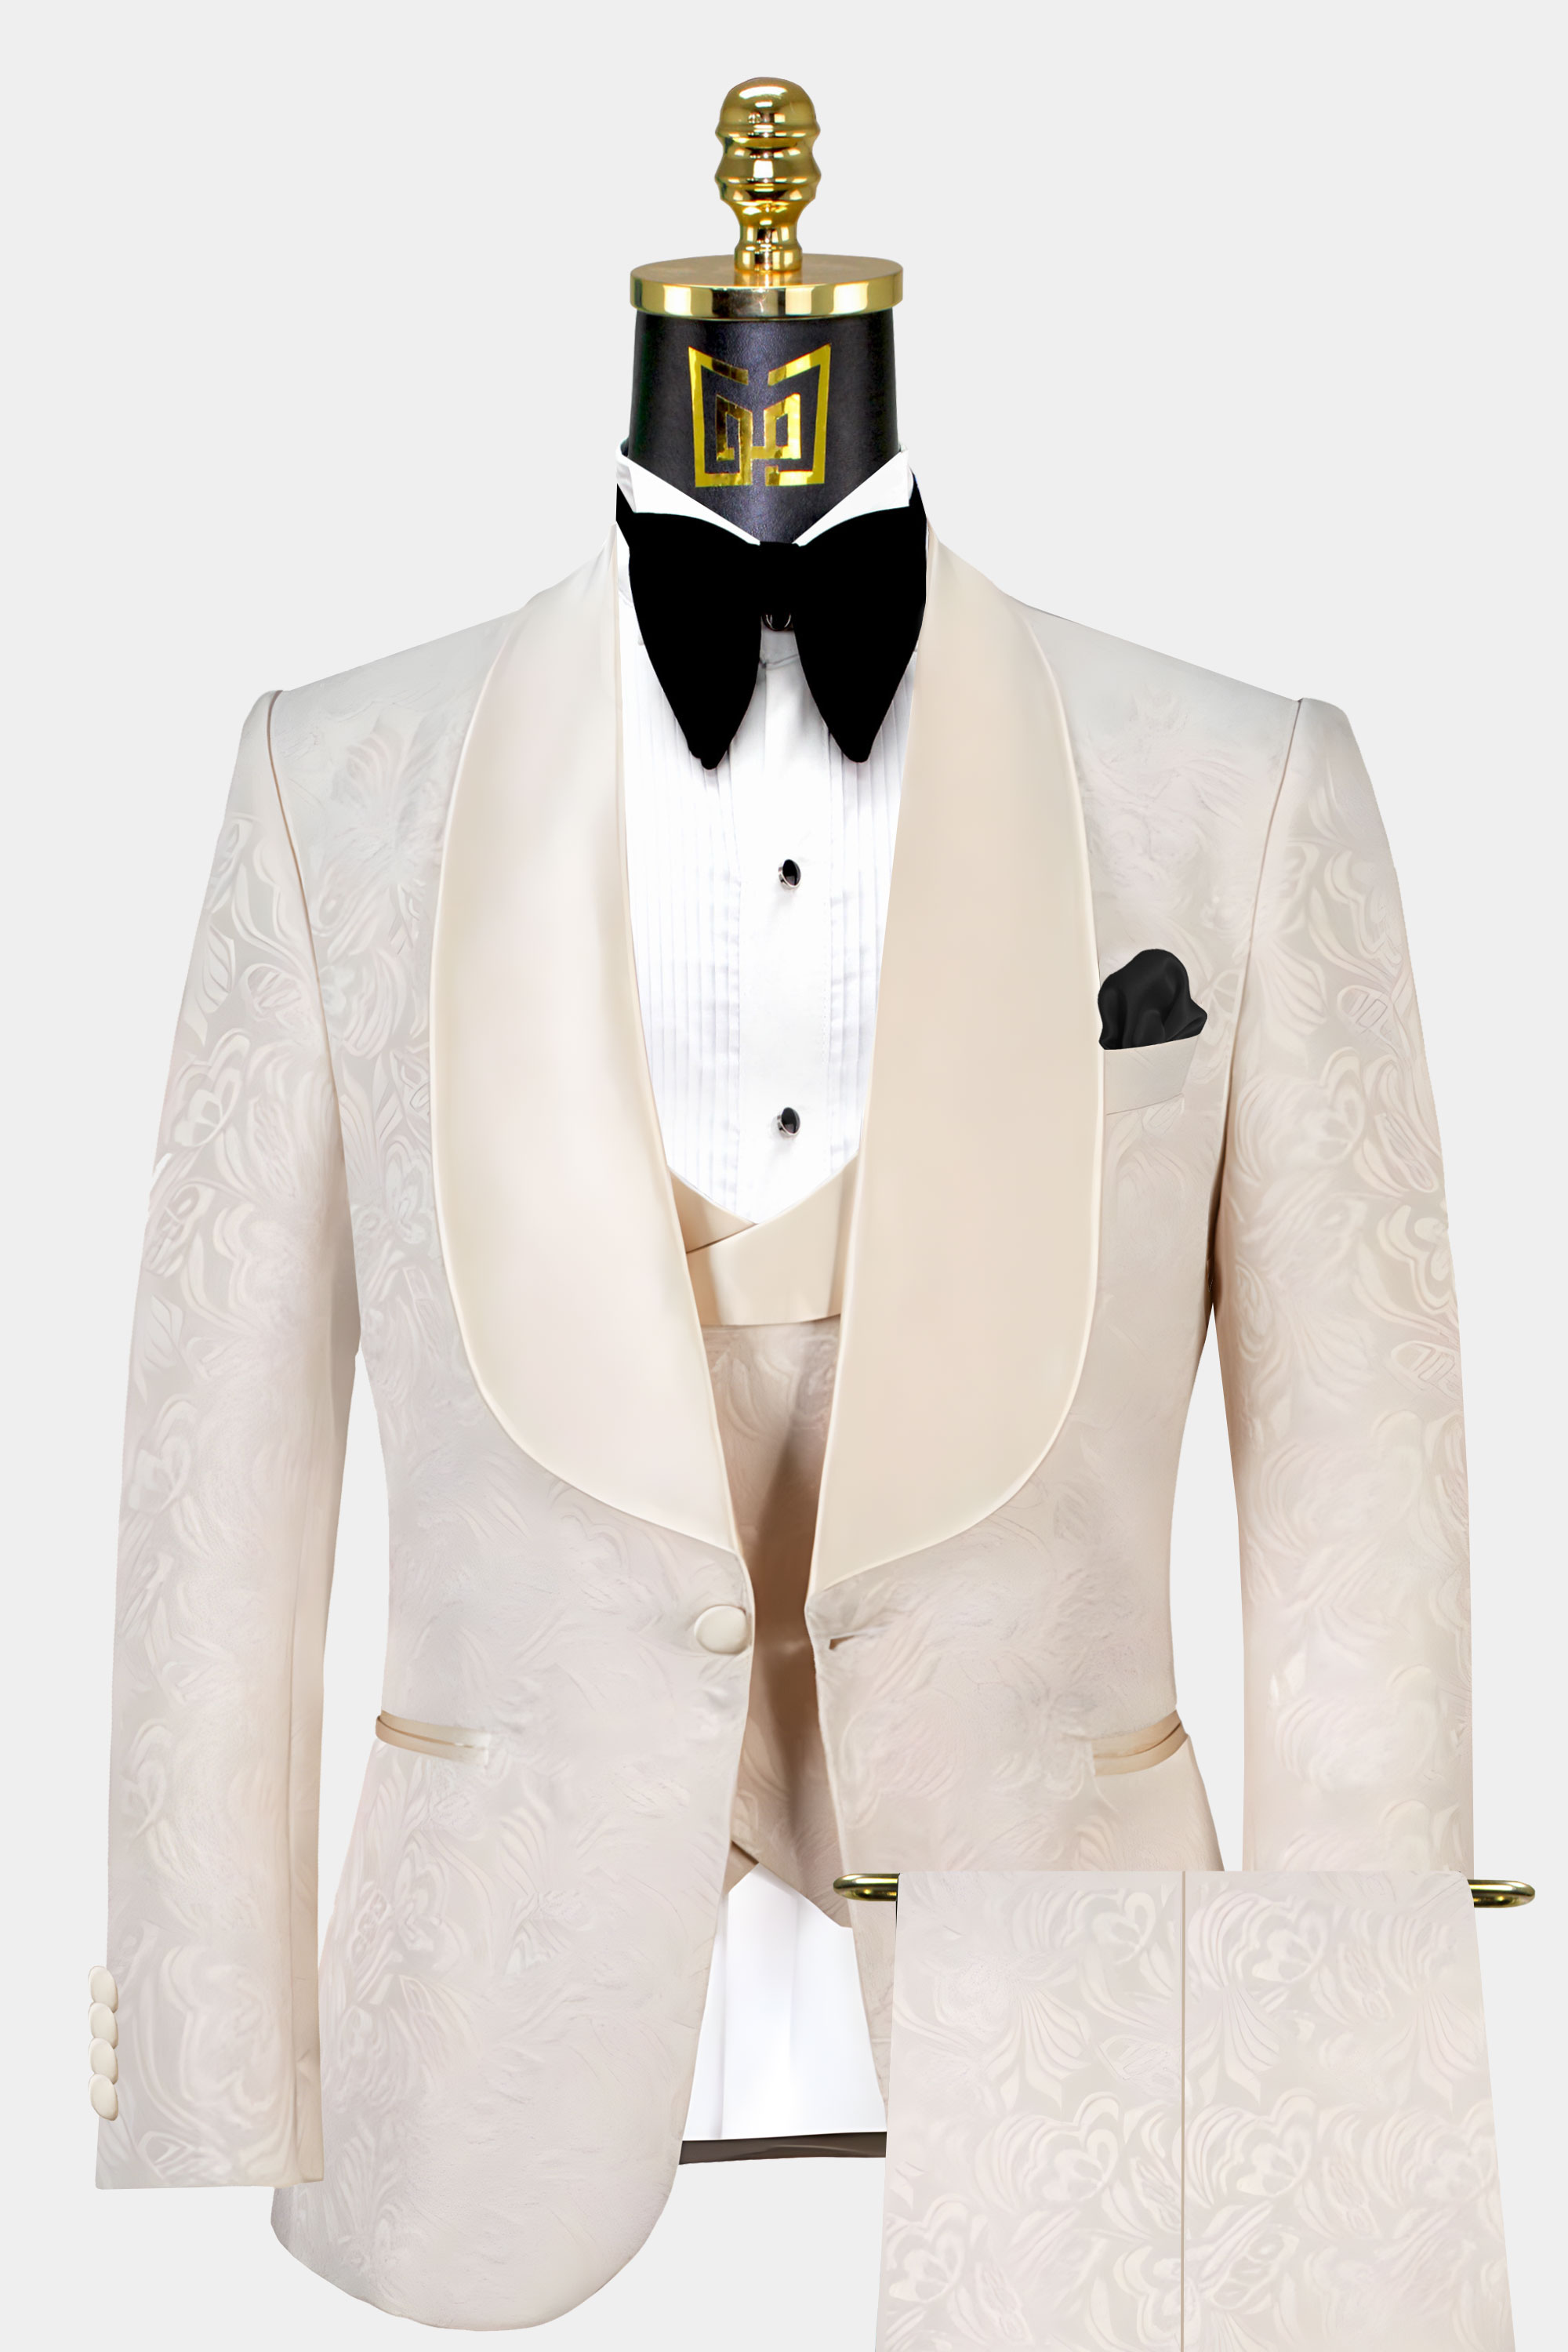 Mens-All-Champagne-Tuxedo-Wedding-Groom-Suit-from-Gentlemansguru.com